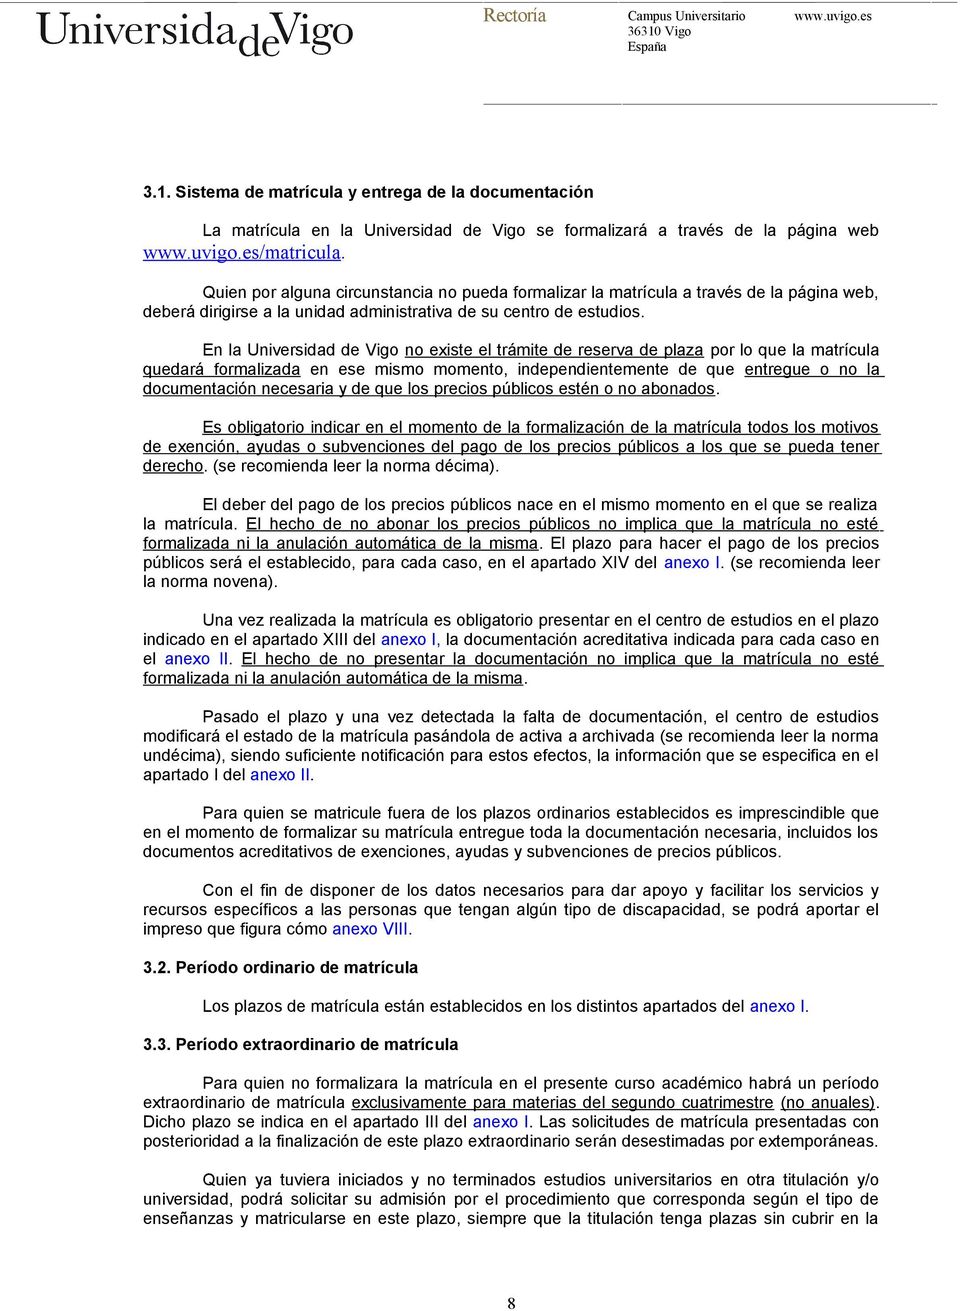 En la Universidad de Vigo no existe el trámite de reserva de plaza por lo que la matrícula quedará formalizada en ese mismo momento, independientemente de que entregue o no la documentación necesaria